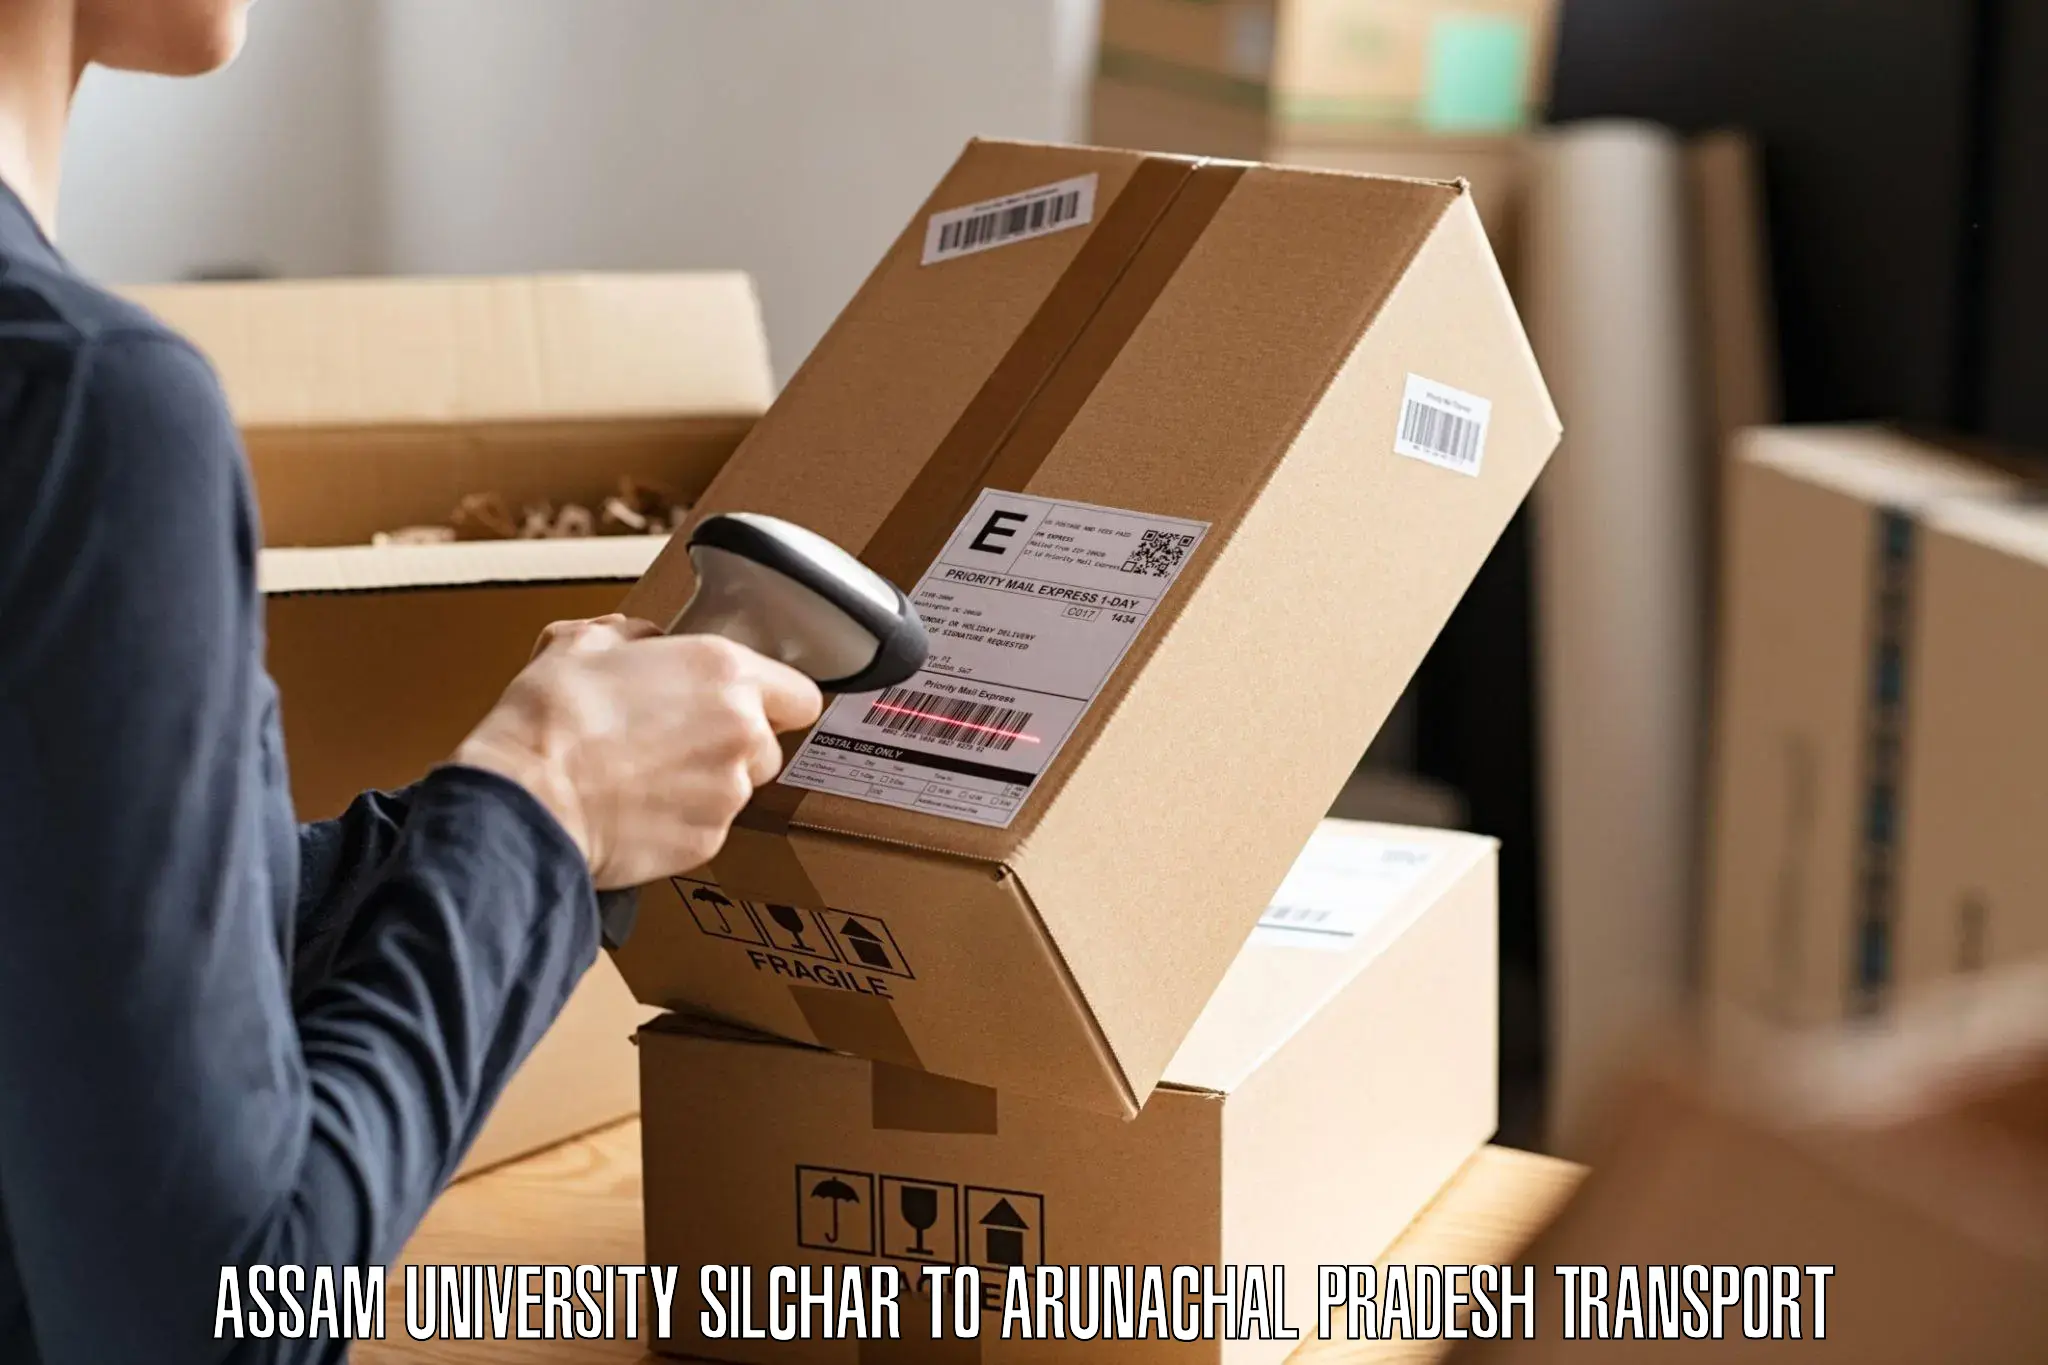 Pick up transport service Assam University Silchar to Yazali